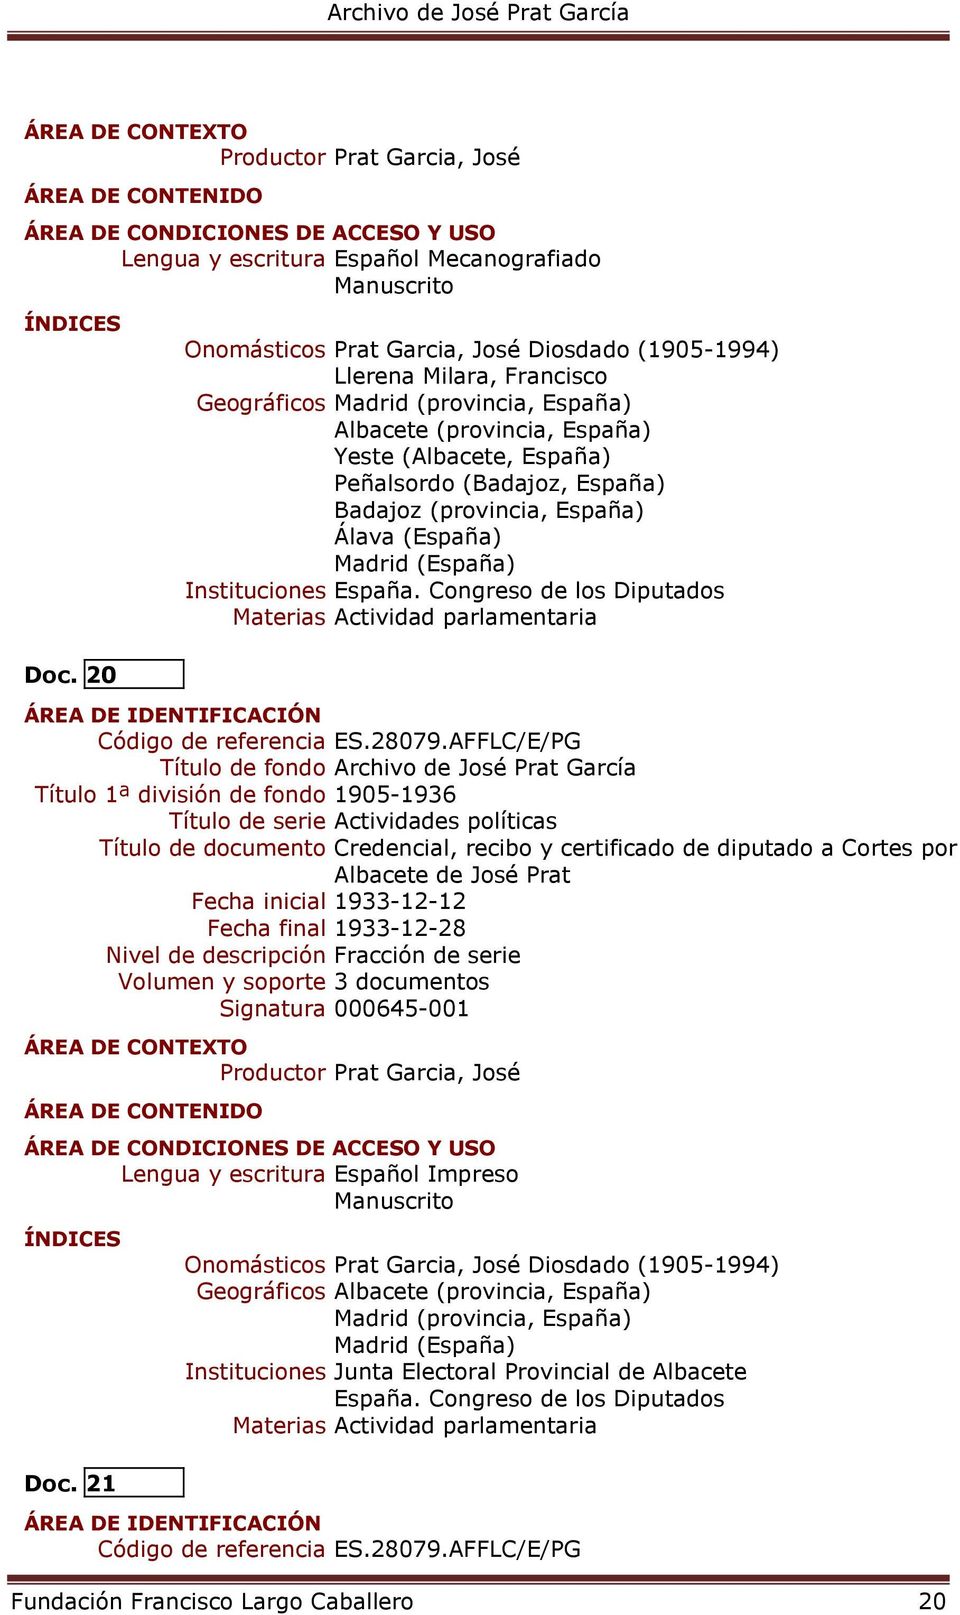 20 Título 1ª división de fondo 1905-1936 Título de documento Credencial, recibo y certificado de diputado a Cortes por Albacete de José Prat Fecha inicial 1933-12-12 Fecha final 1933-12-28 Volumen